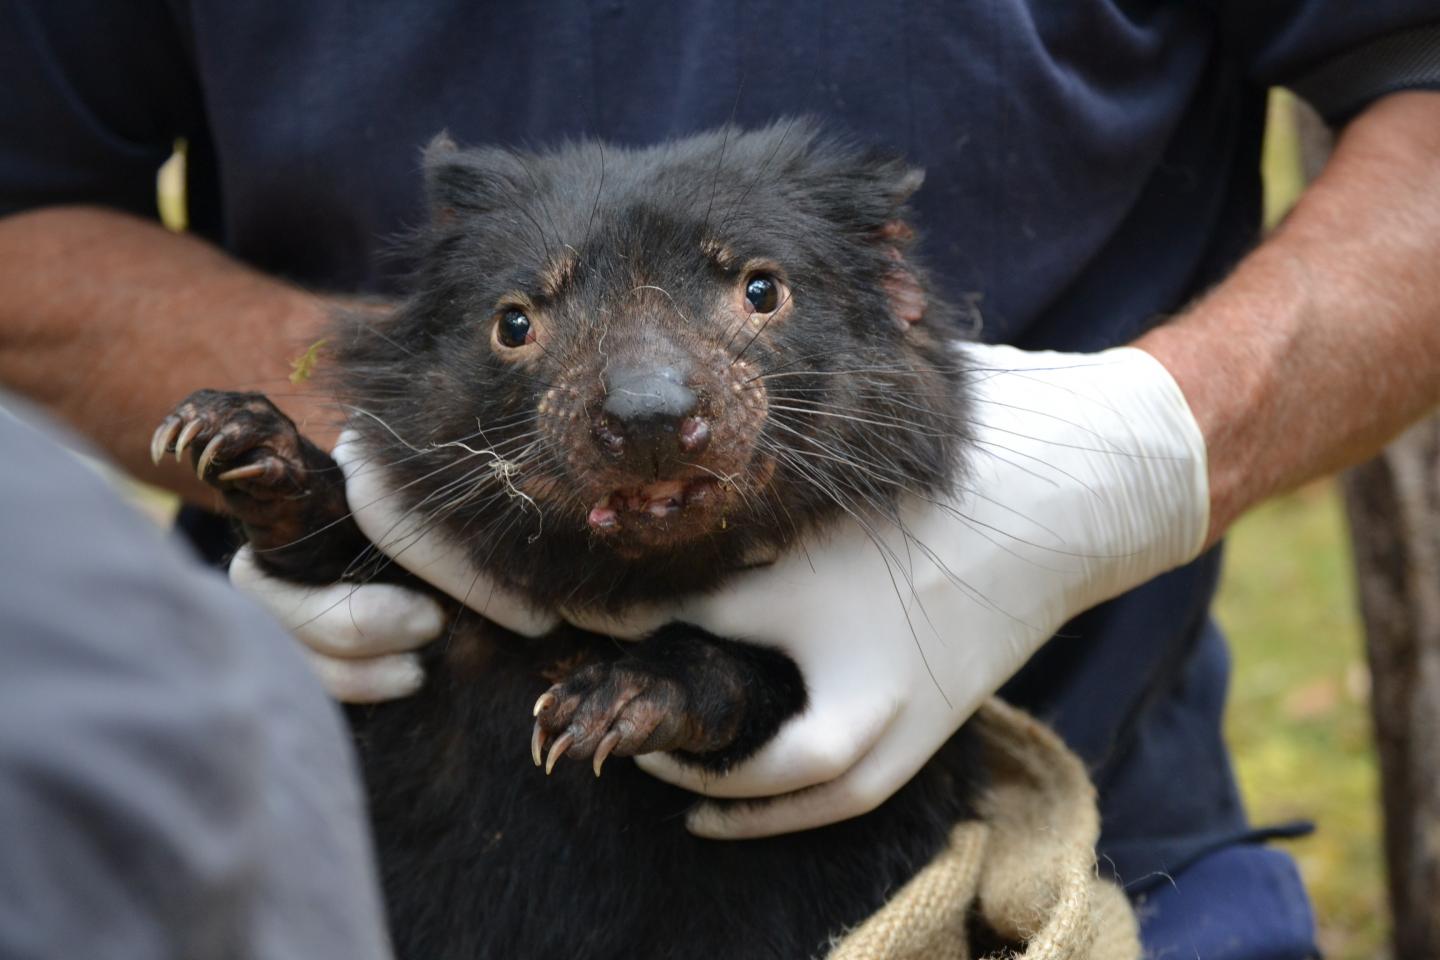 Tasmanian Devil facts: Shouting for Food